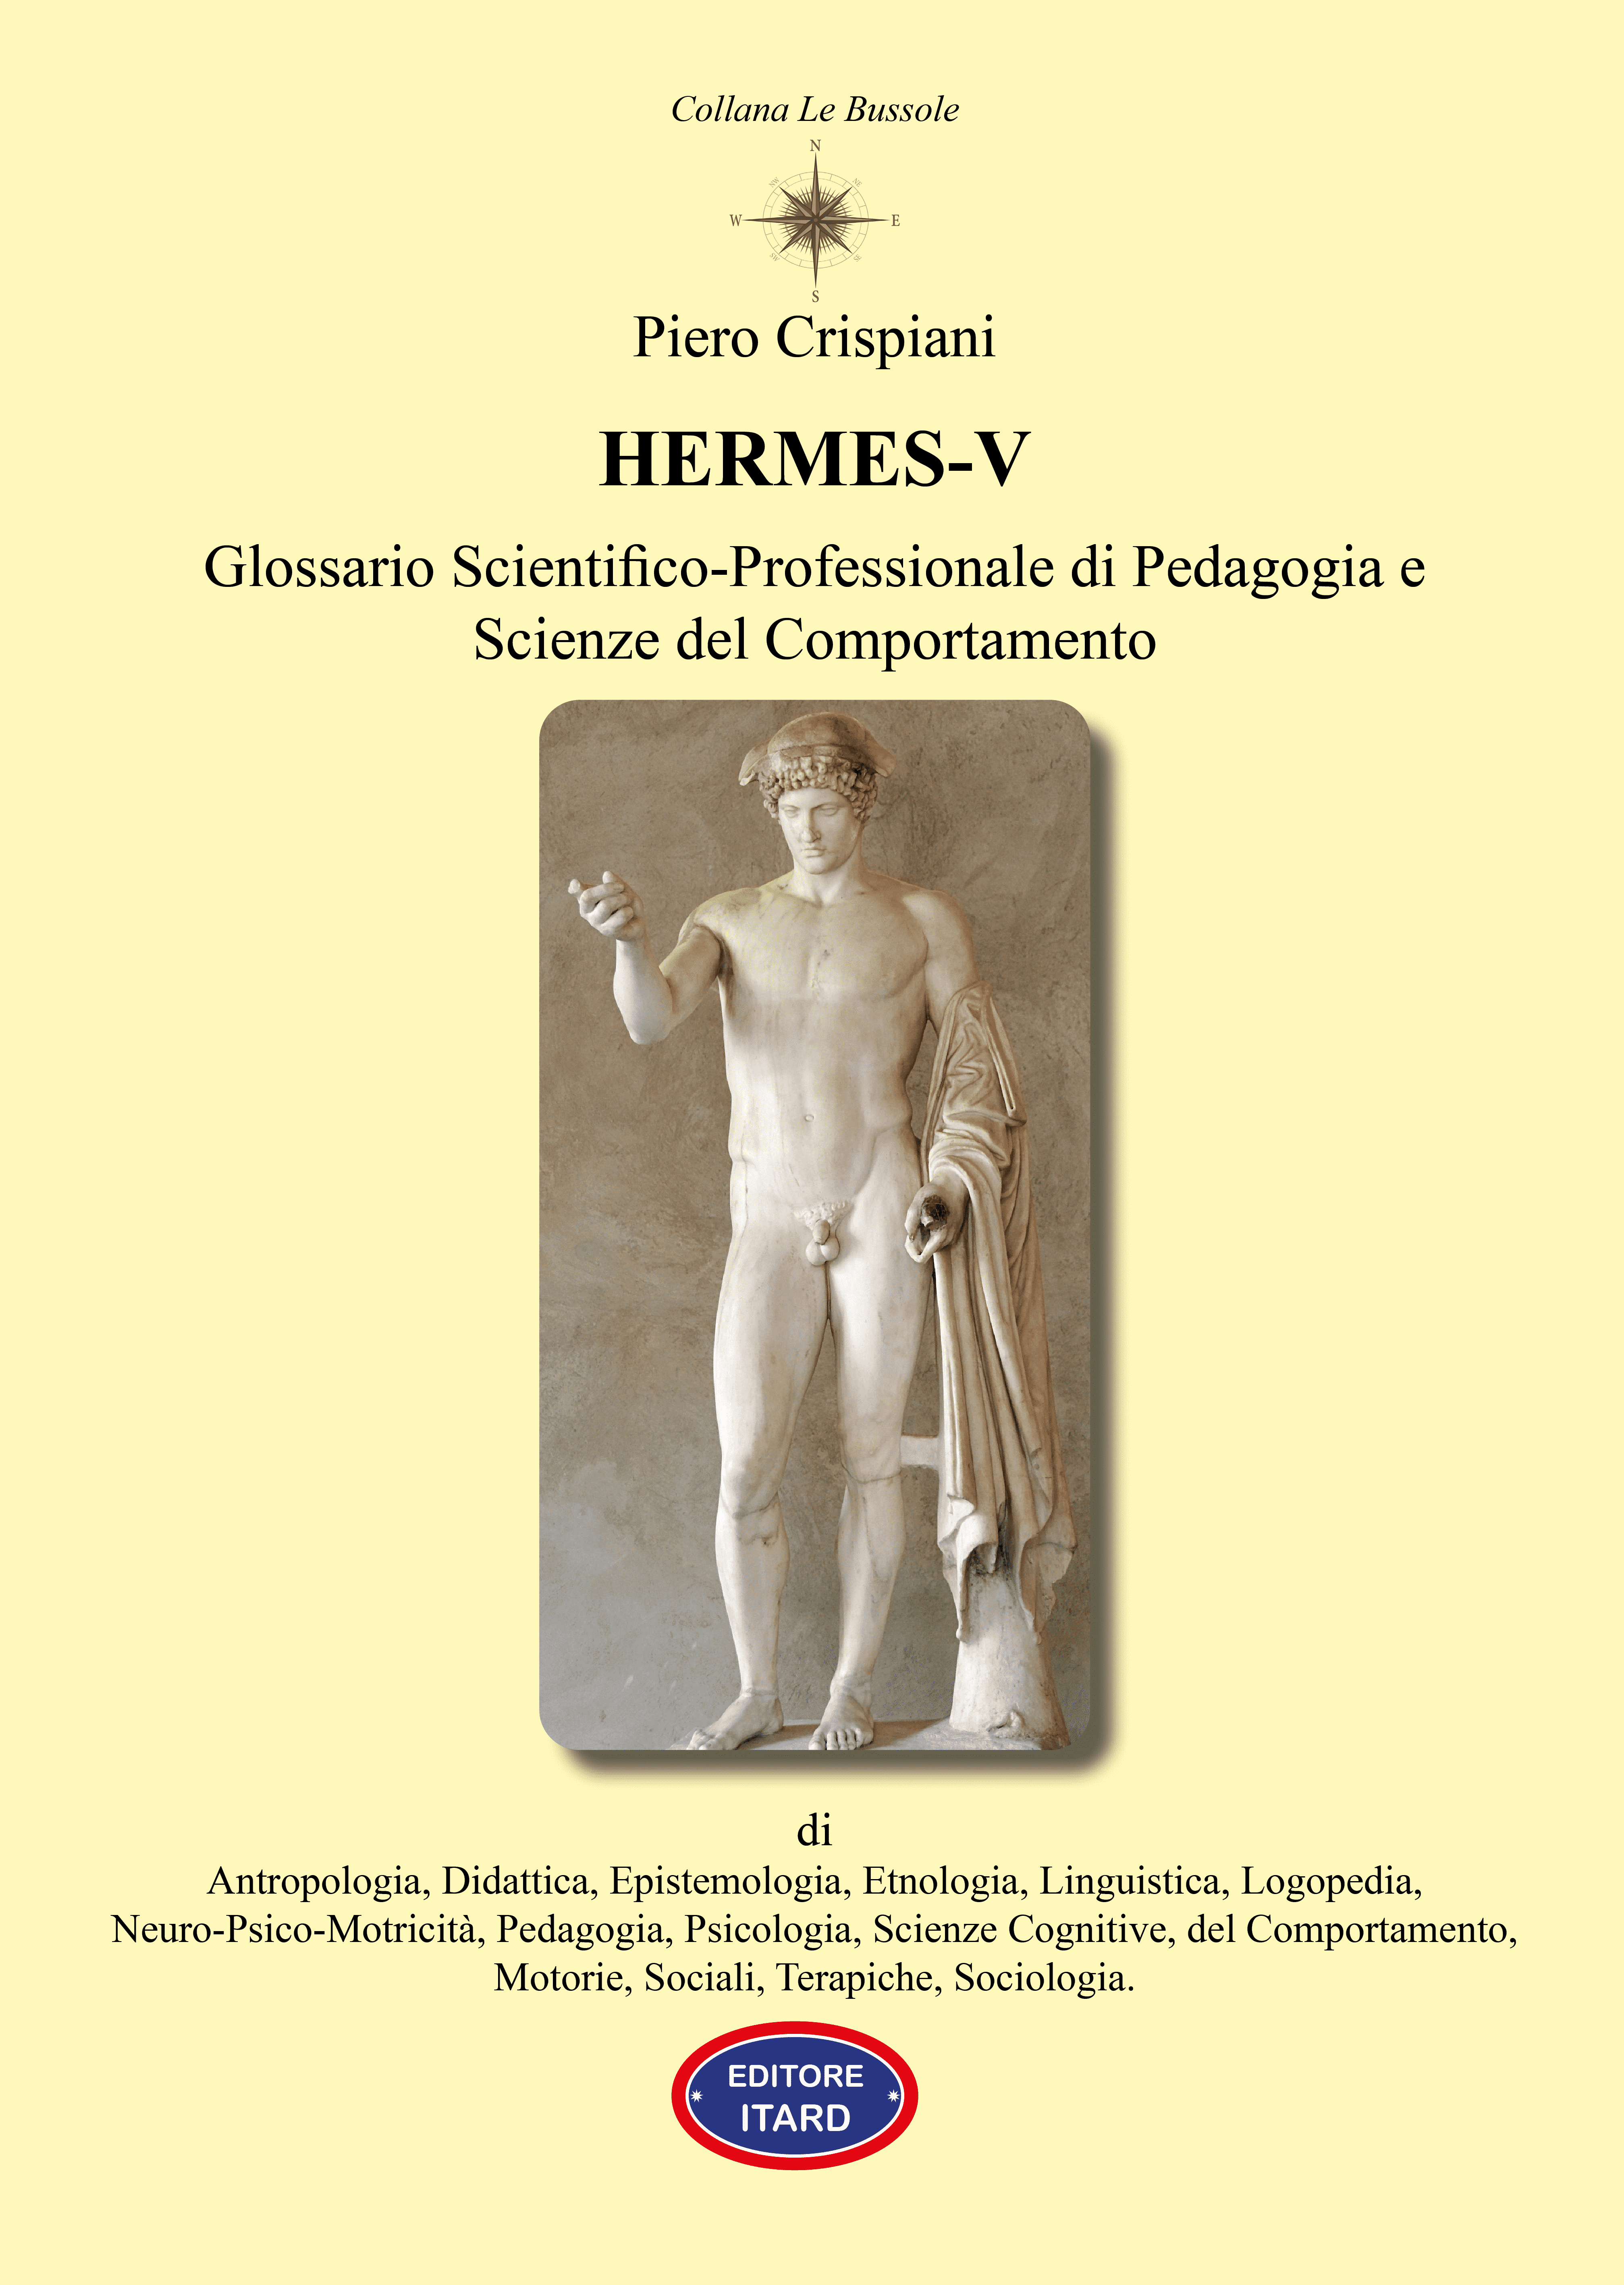 Hermes-V - Glossario Scientifico-Professionale di Pedagogia e Scienze del Comportamento